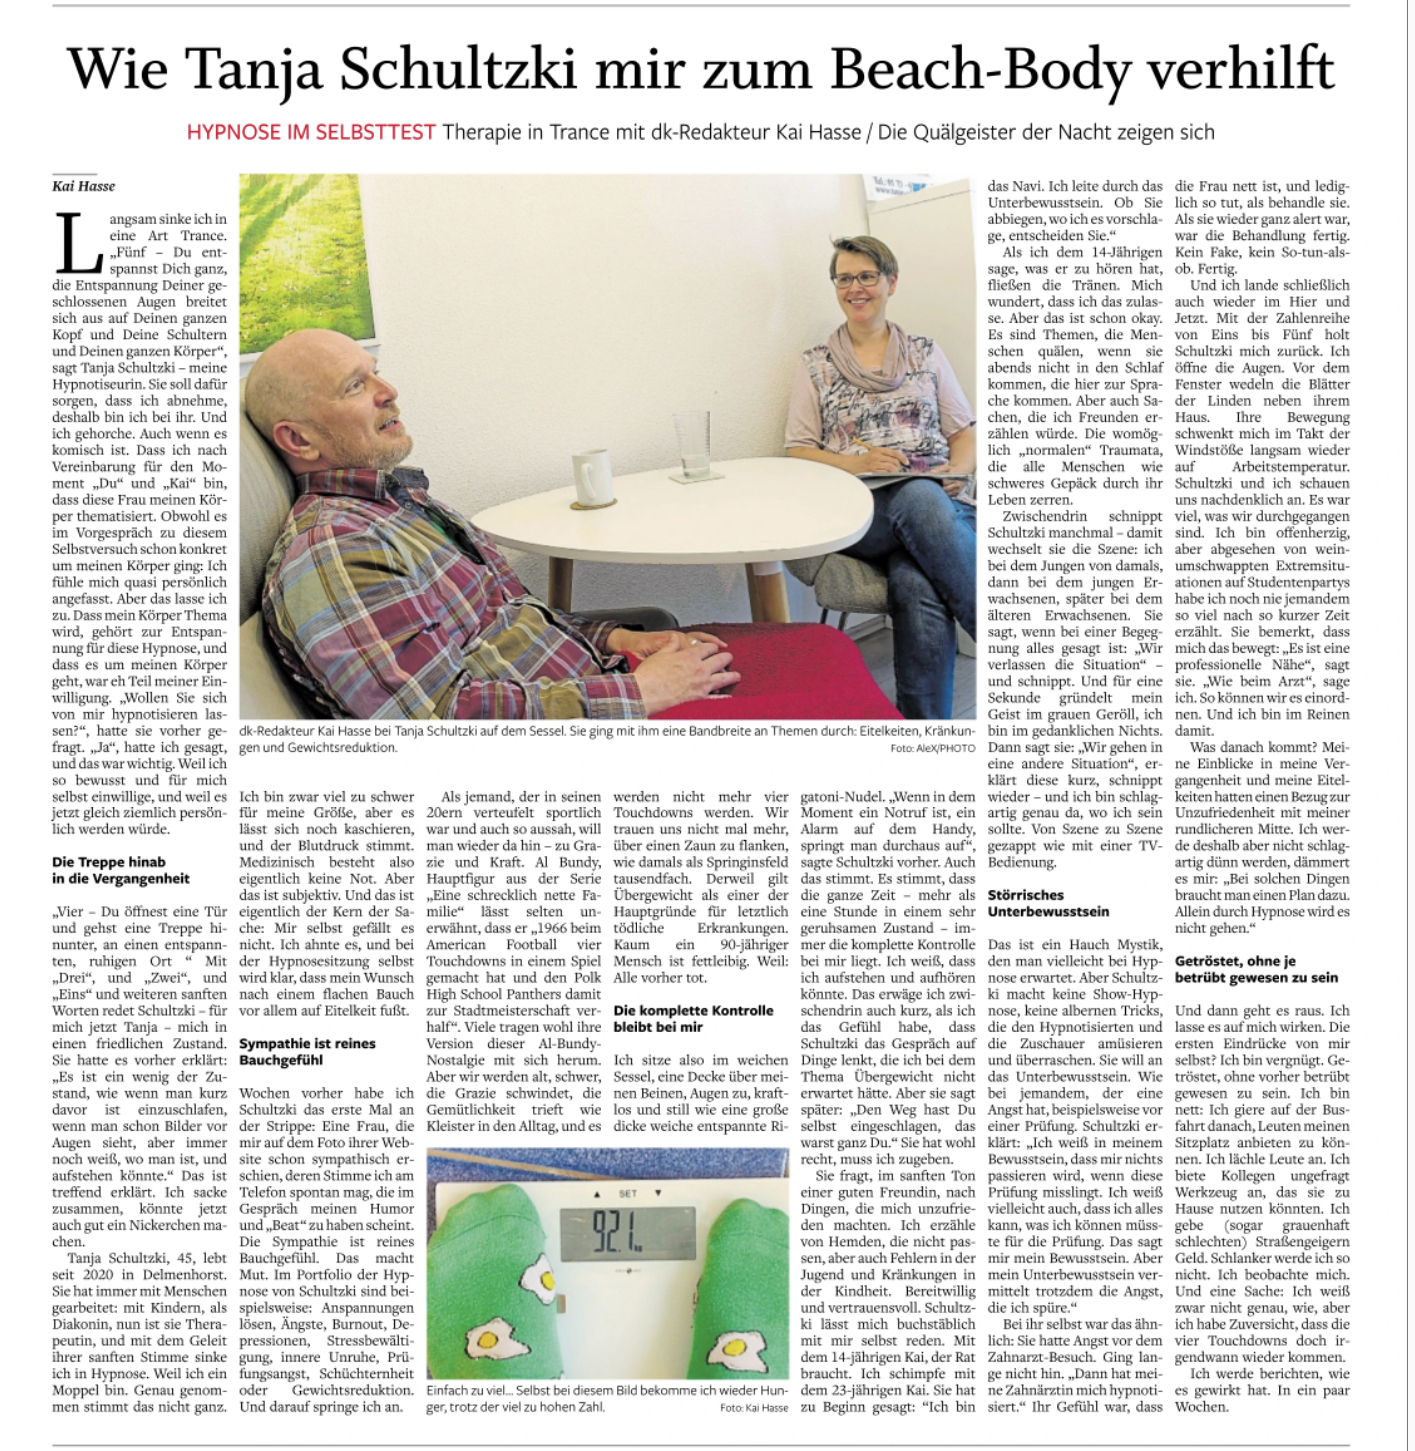 Therapie in Trance - Zeitungsatikel des Delmenhorster Kreisblatts